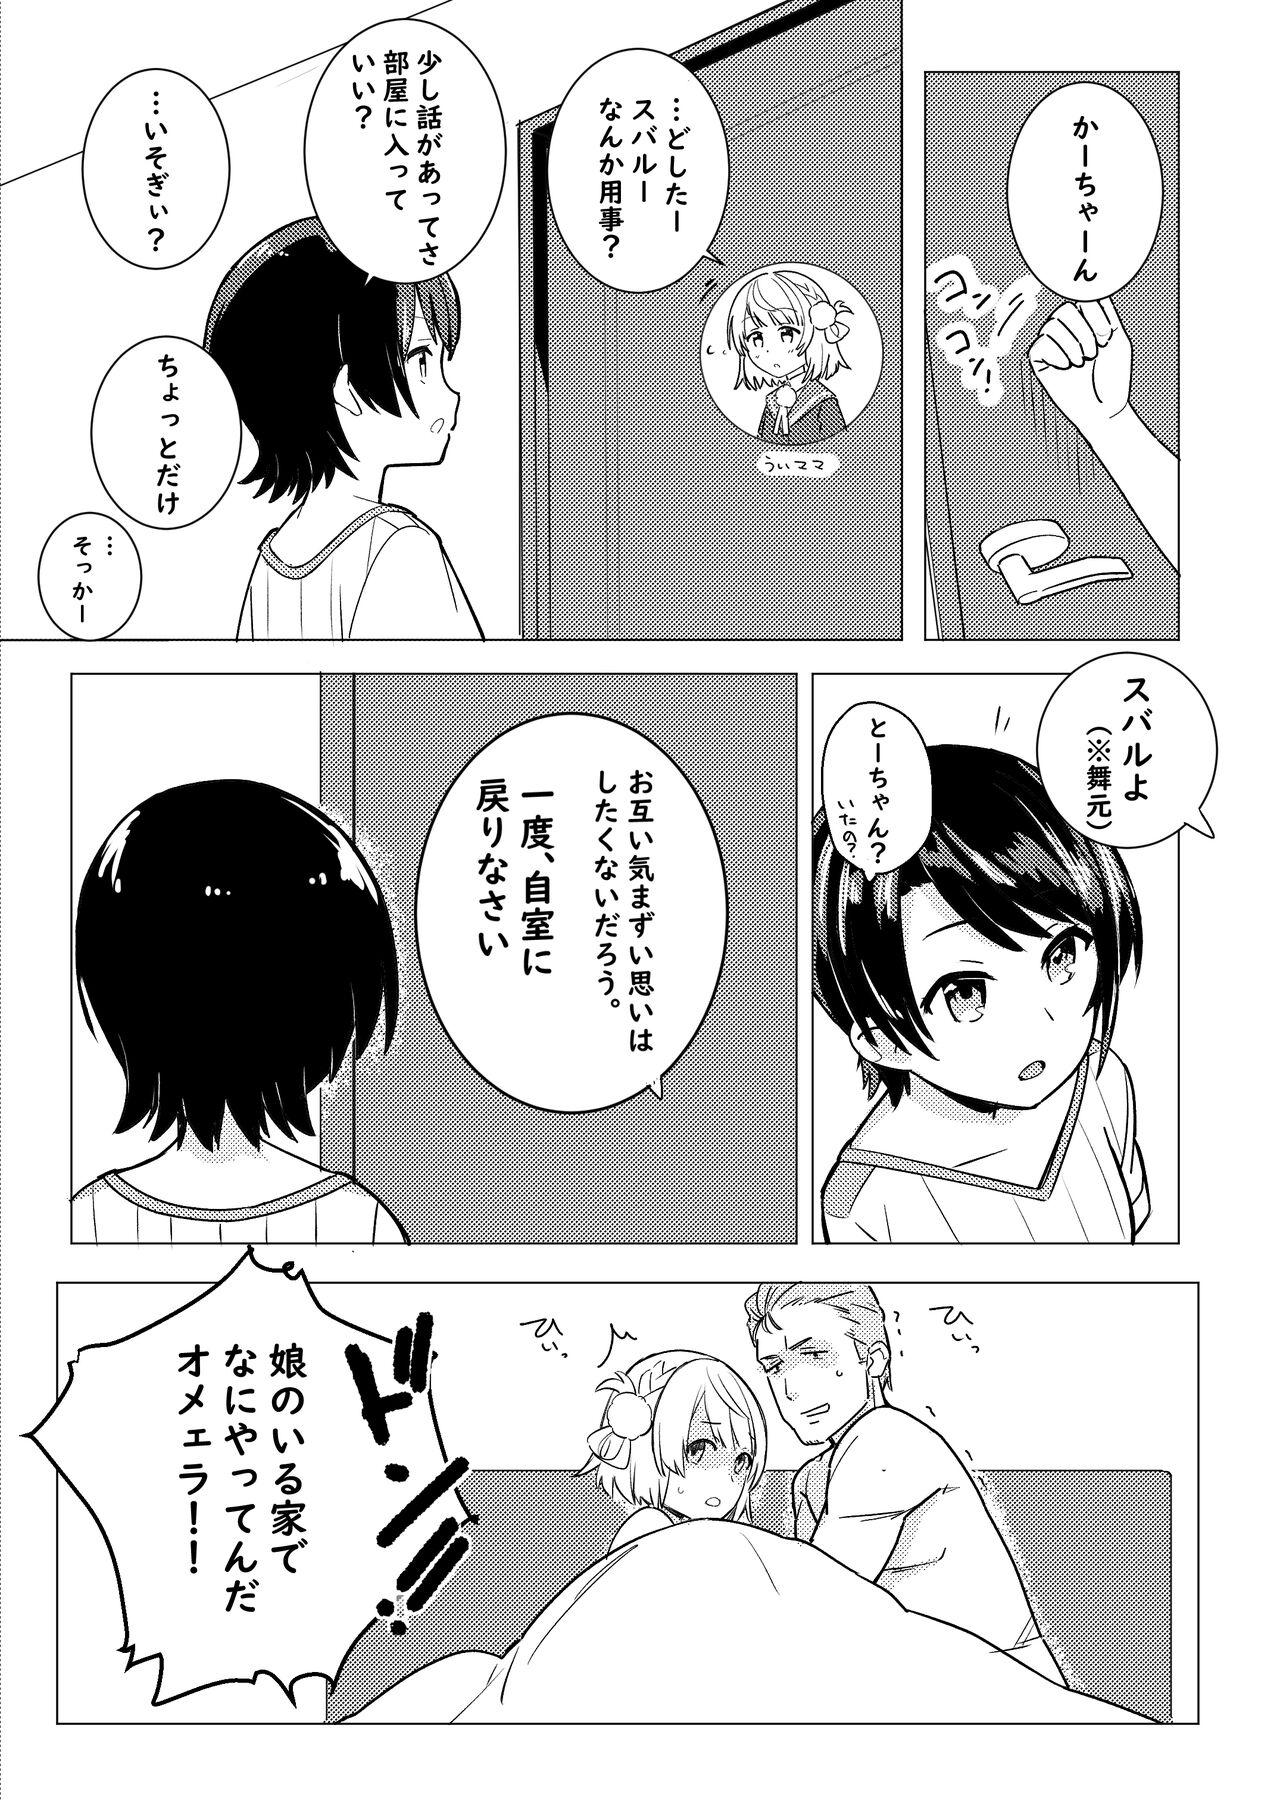 Girlongirl Twitter Short Manga - Hololive Balls - Page 5